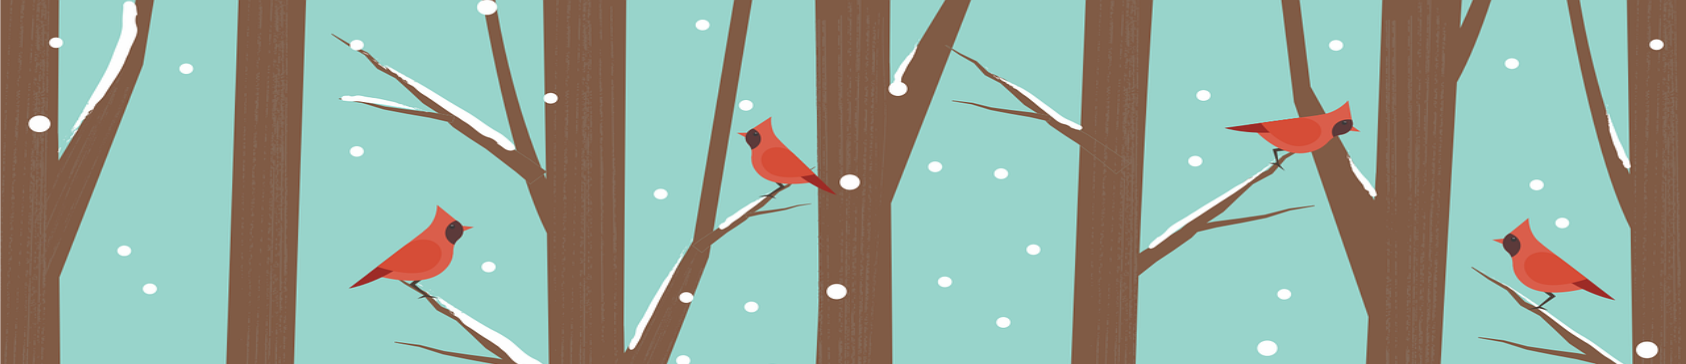 冬天光秃秃的树的艺术渲染，红雀栖息在四根树枝上.